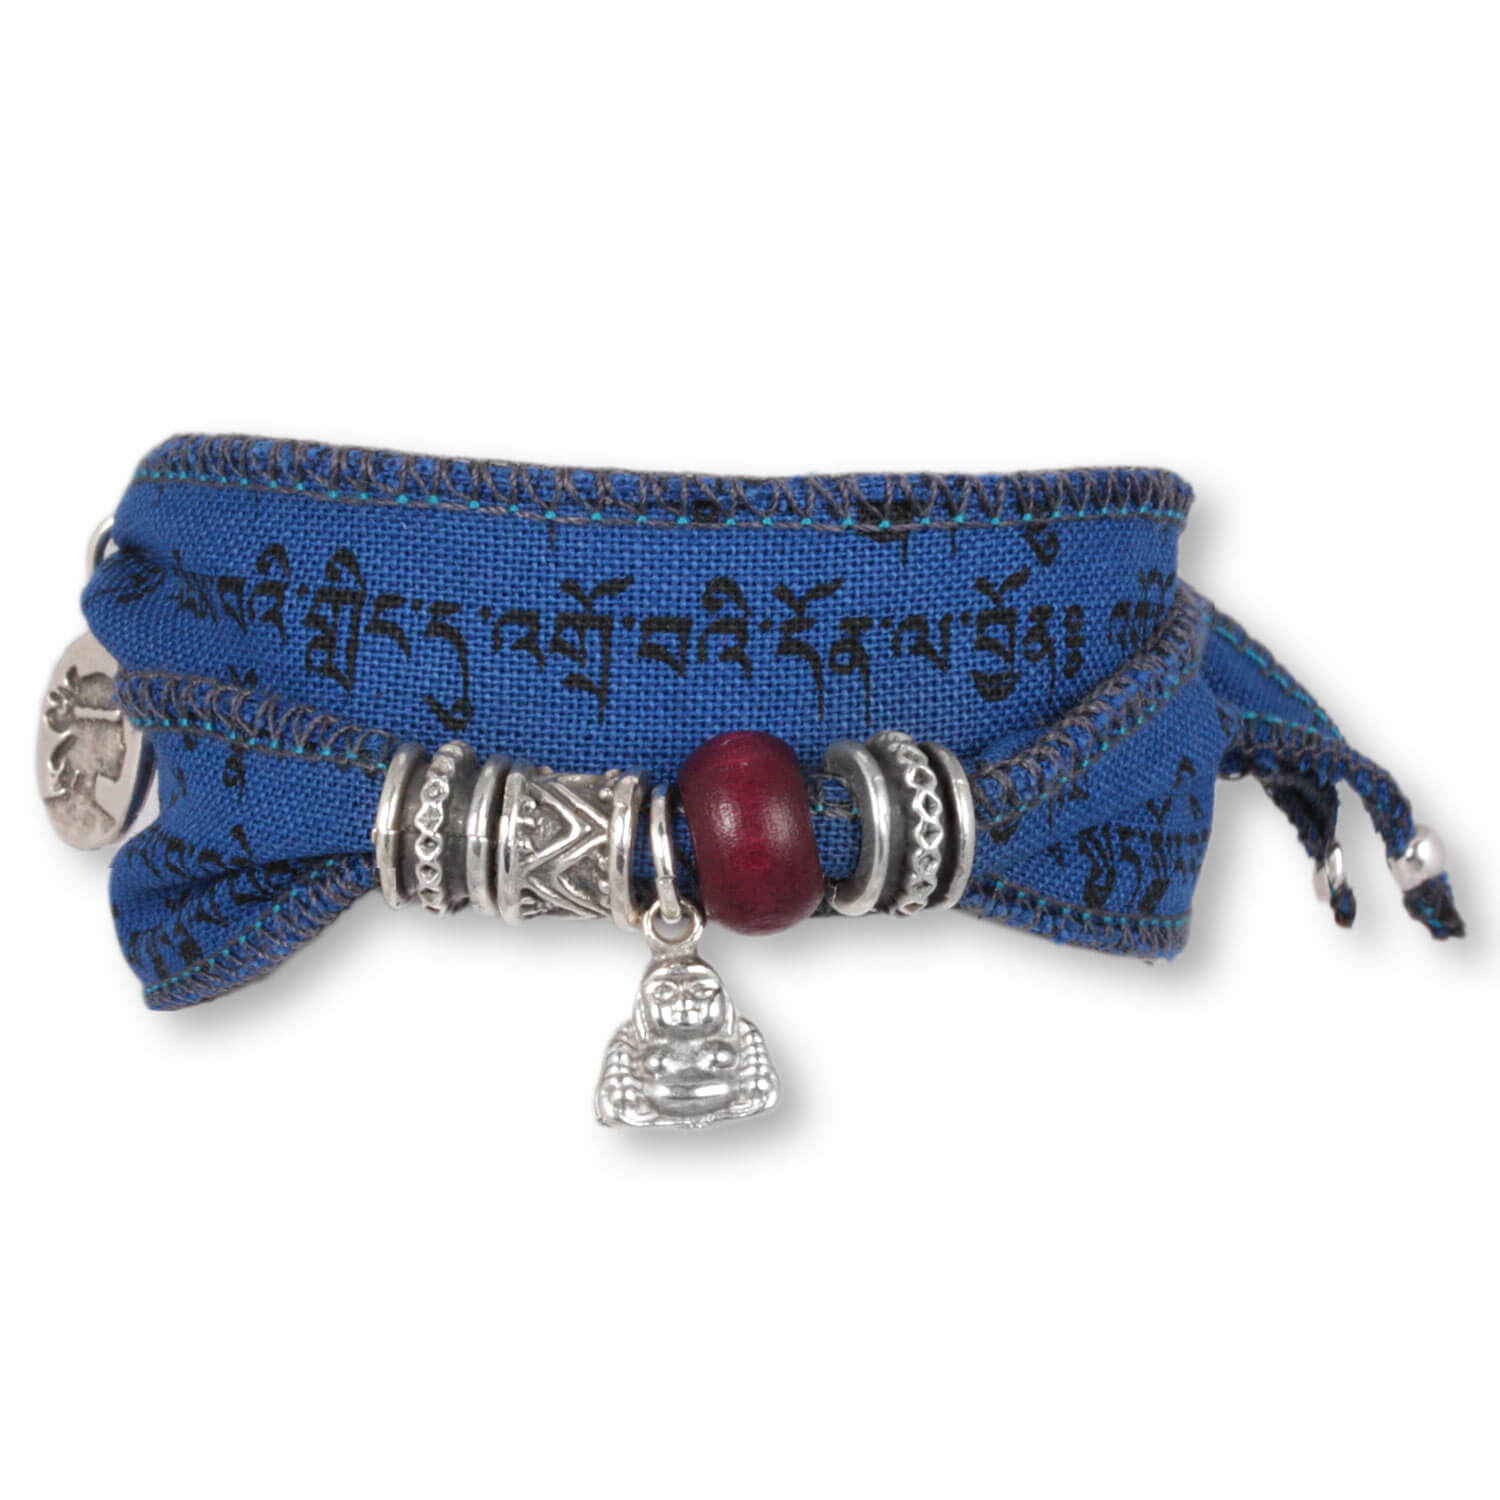 Space Little Buddha - Tibetan Wish bracelet made from Tibetan prayer flags